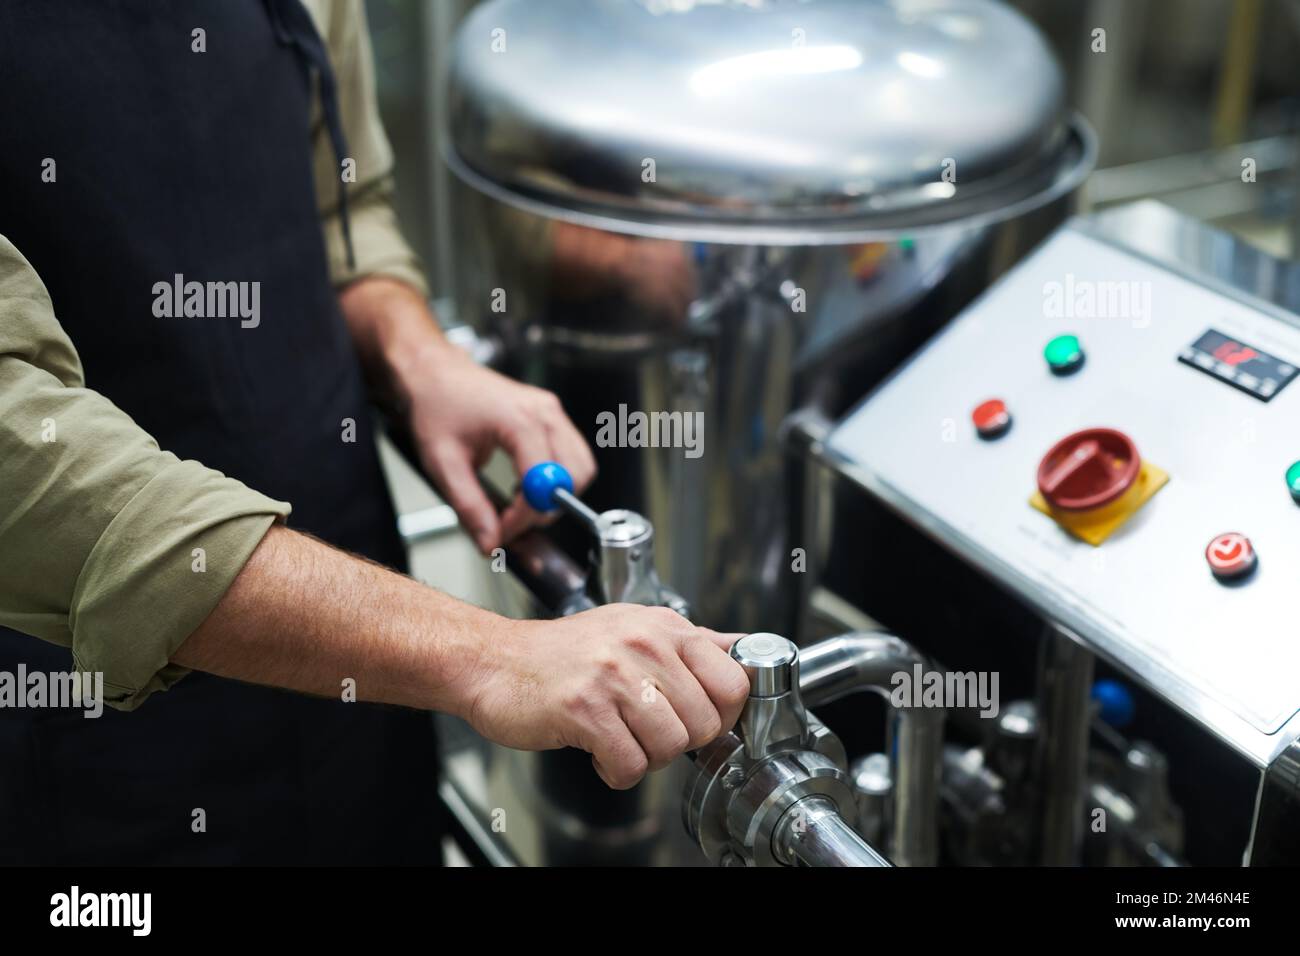 Manos del trabajador que opera el equipo de la cervecería para establecer la presión necesaria Foto de stock